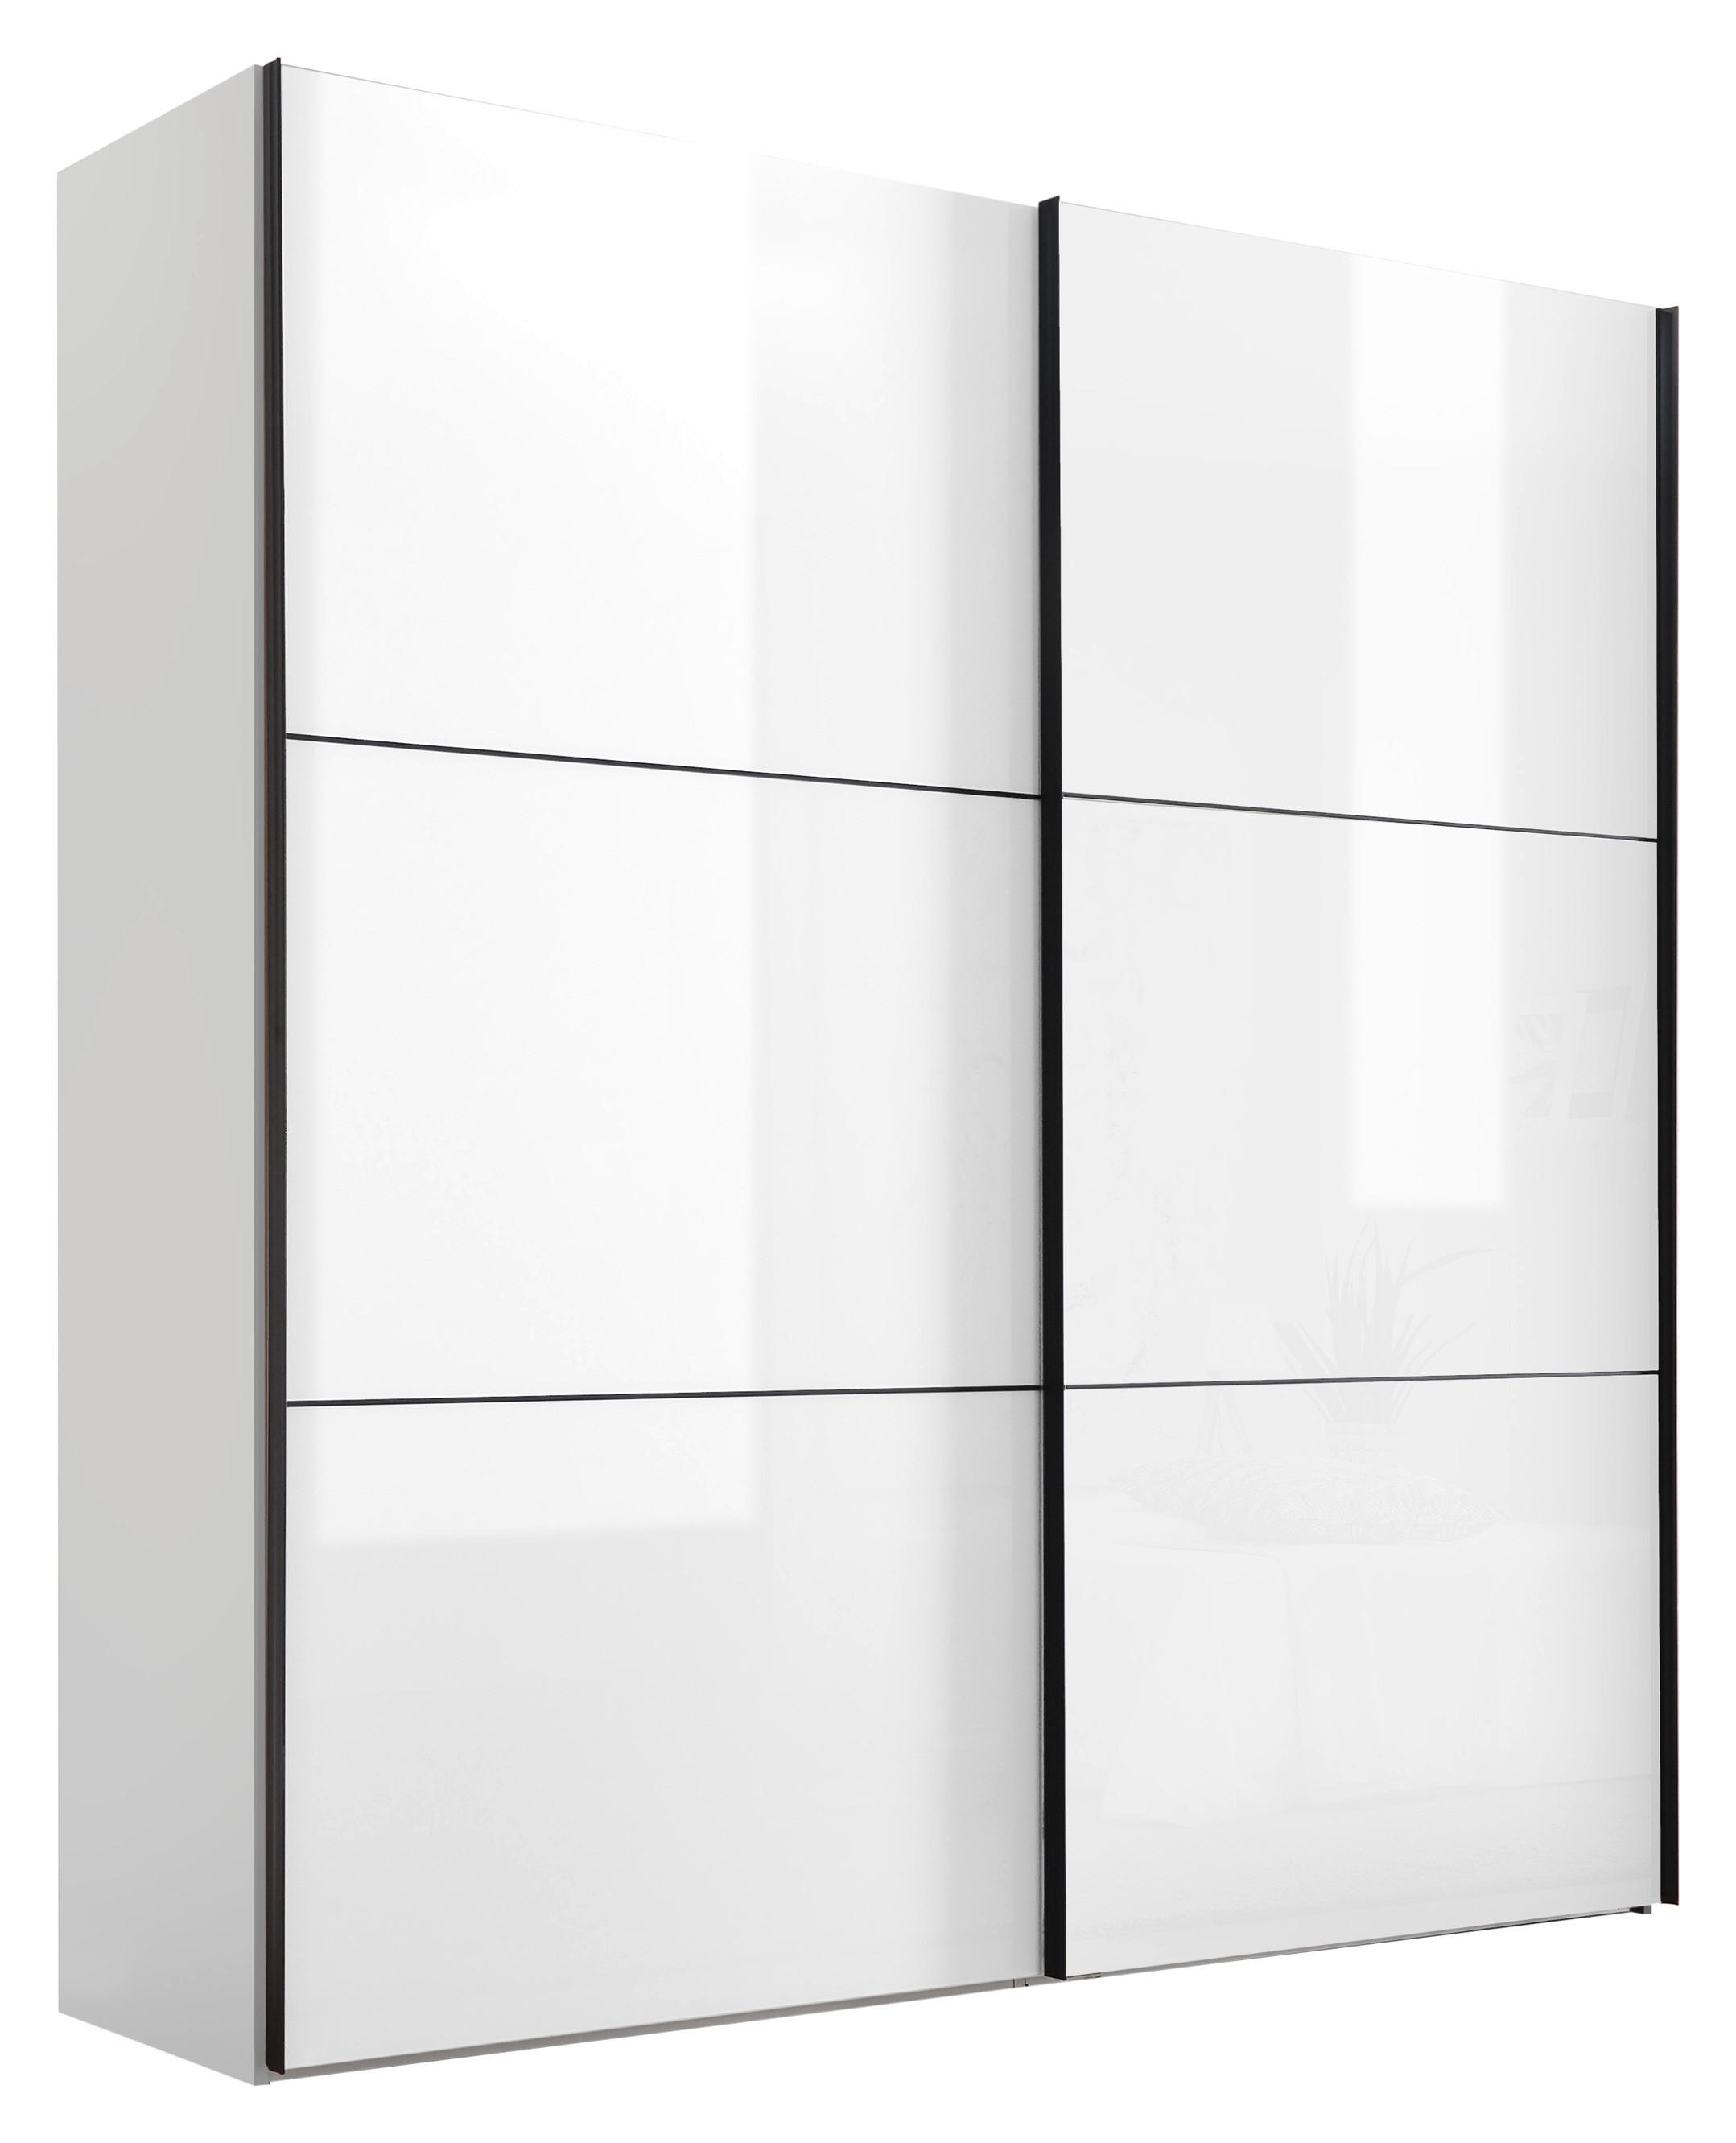 SCHWEBETÜRENSCHRANK Glasfront 2-türig Weiß  - Schwarz/Weiß, KONVENTIONELL, Glas/Holzwerkstoff (200/222/68cm) - Moderano